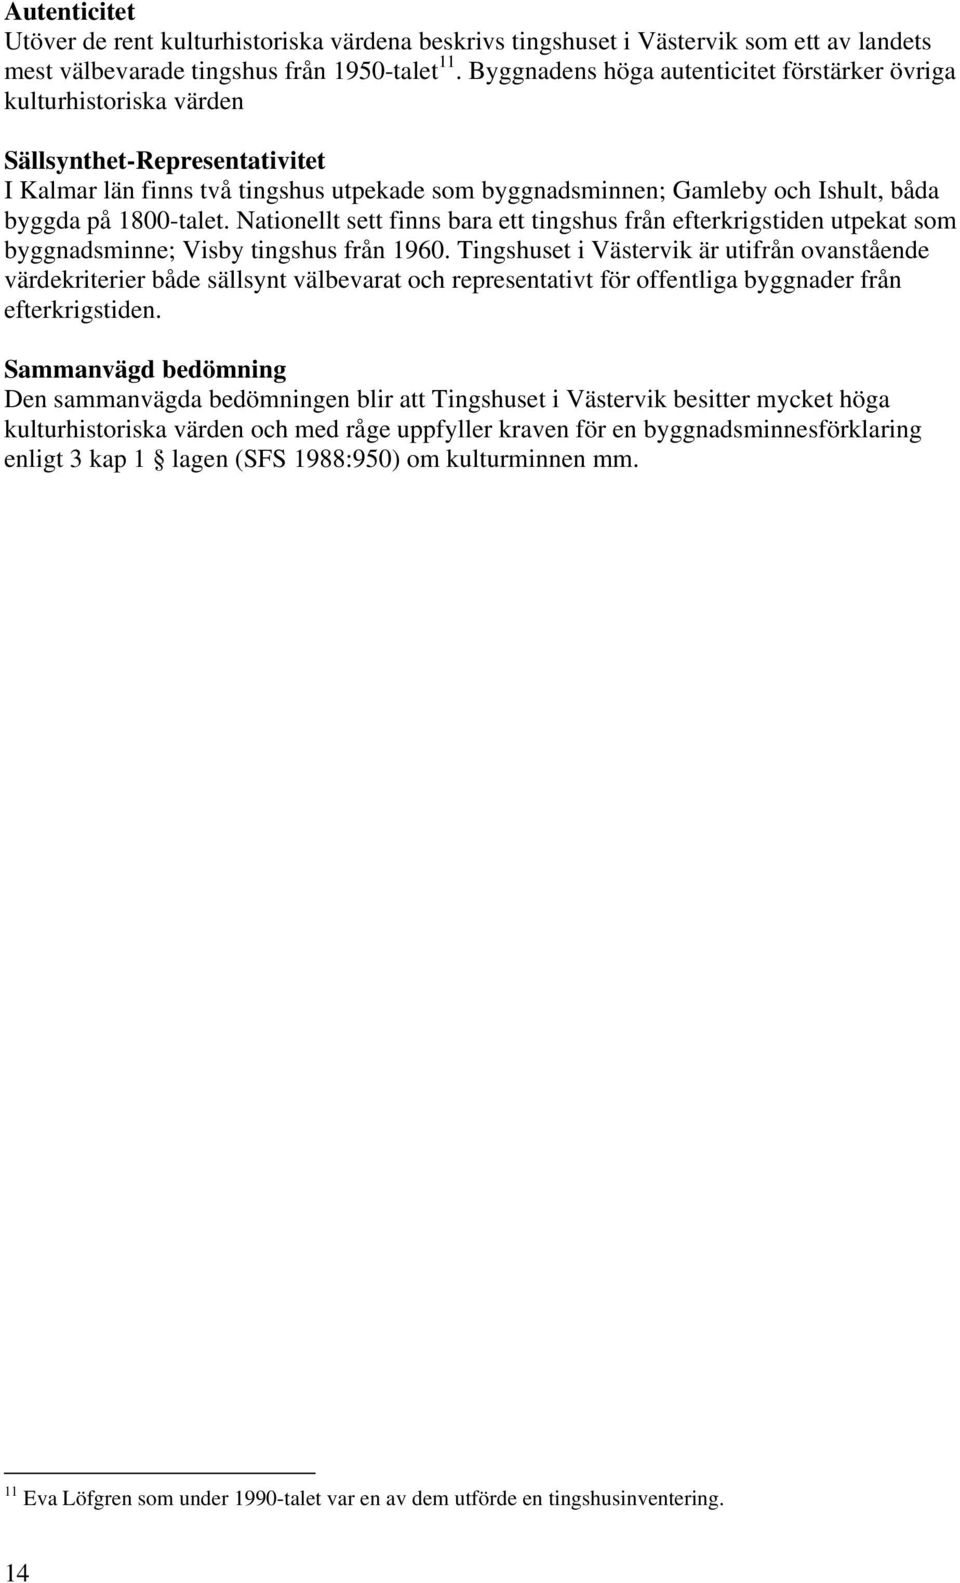 1800-talet. Nationellt sett finns bara ett tingshus från efterkrigstiden utpekat som byggnadsminne; Visby tingshus från 1960.